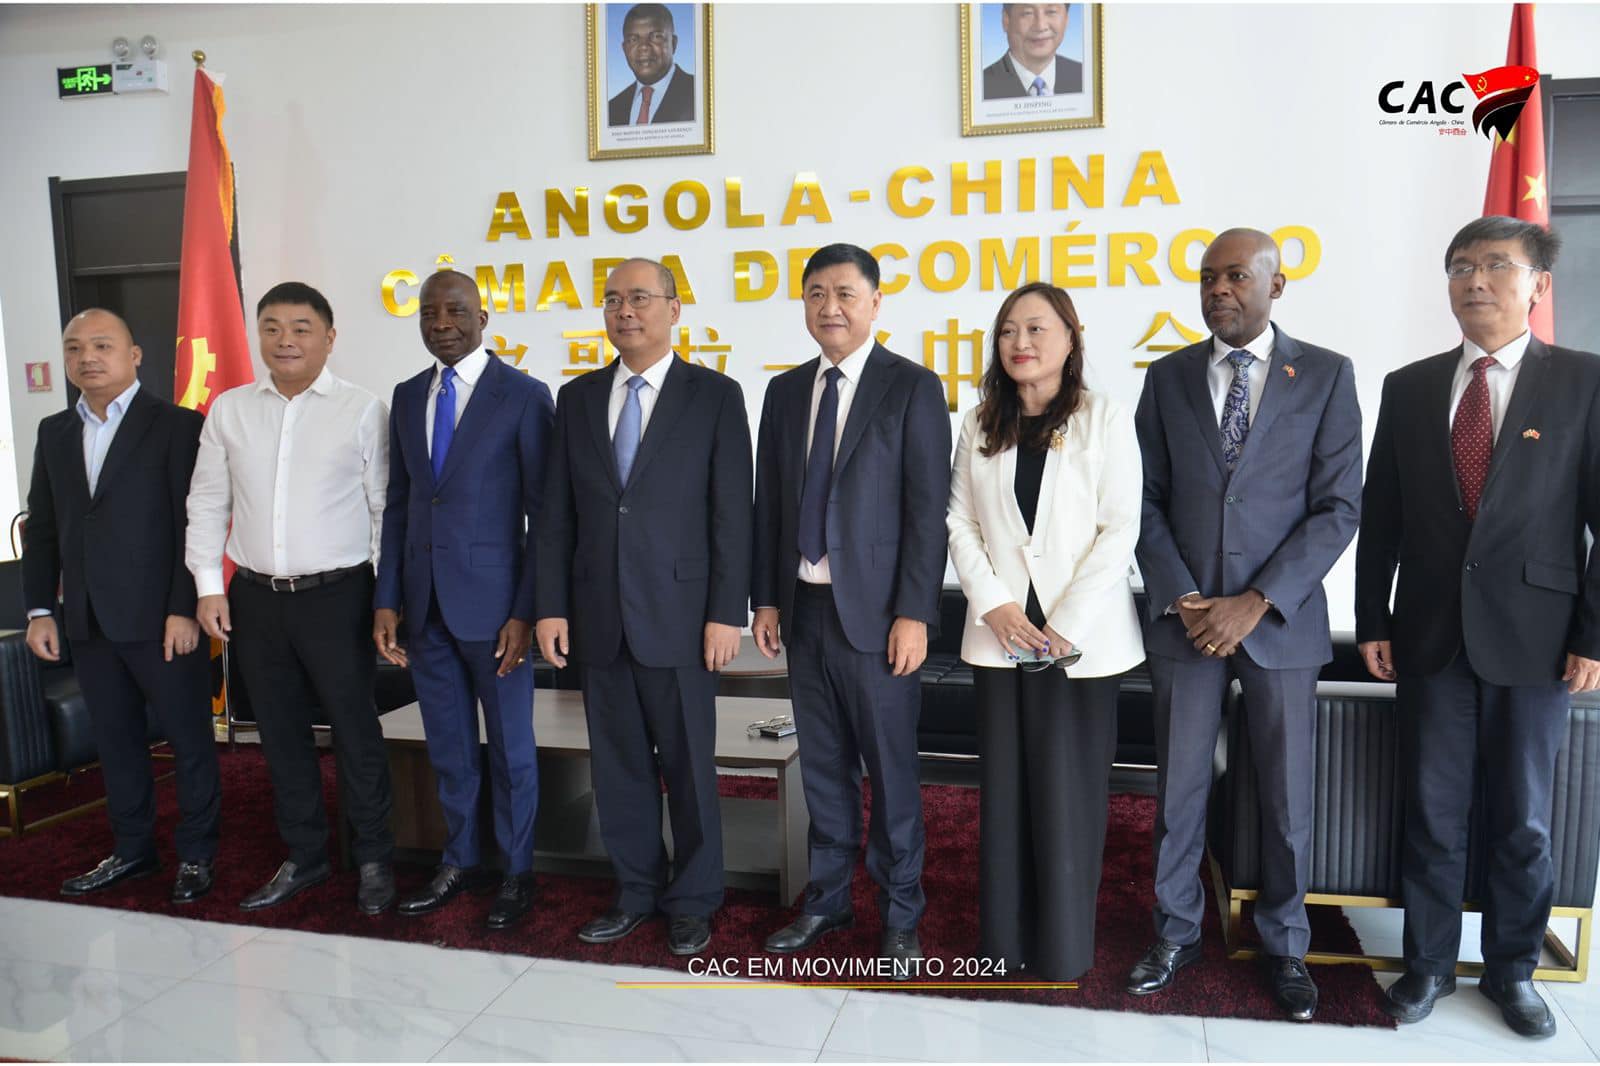 Embaixador da República popular da china em Angola,Reafirma comprimisso de trabalhar em parceria com a camara de comércio Angola-China